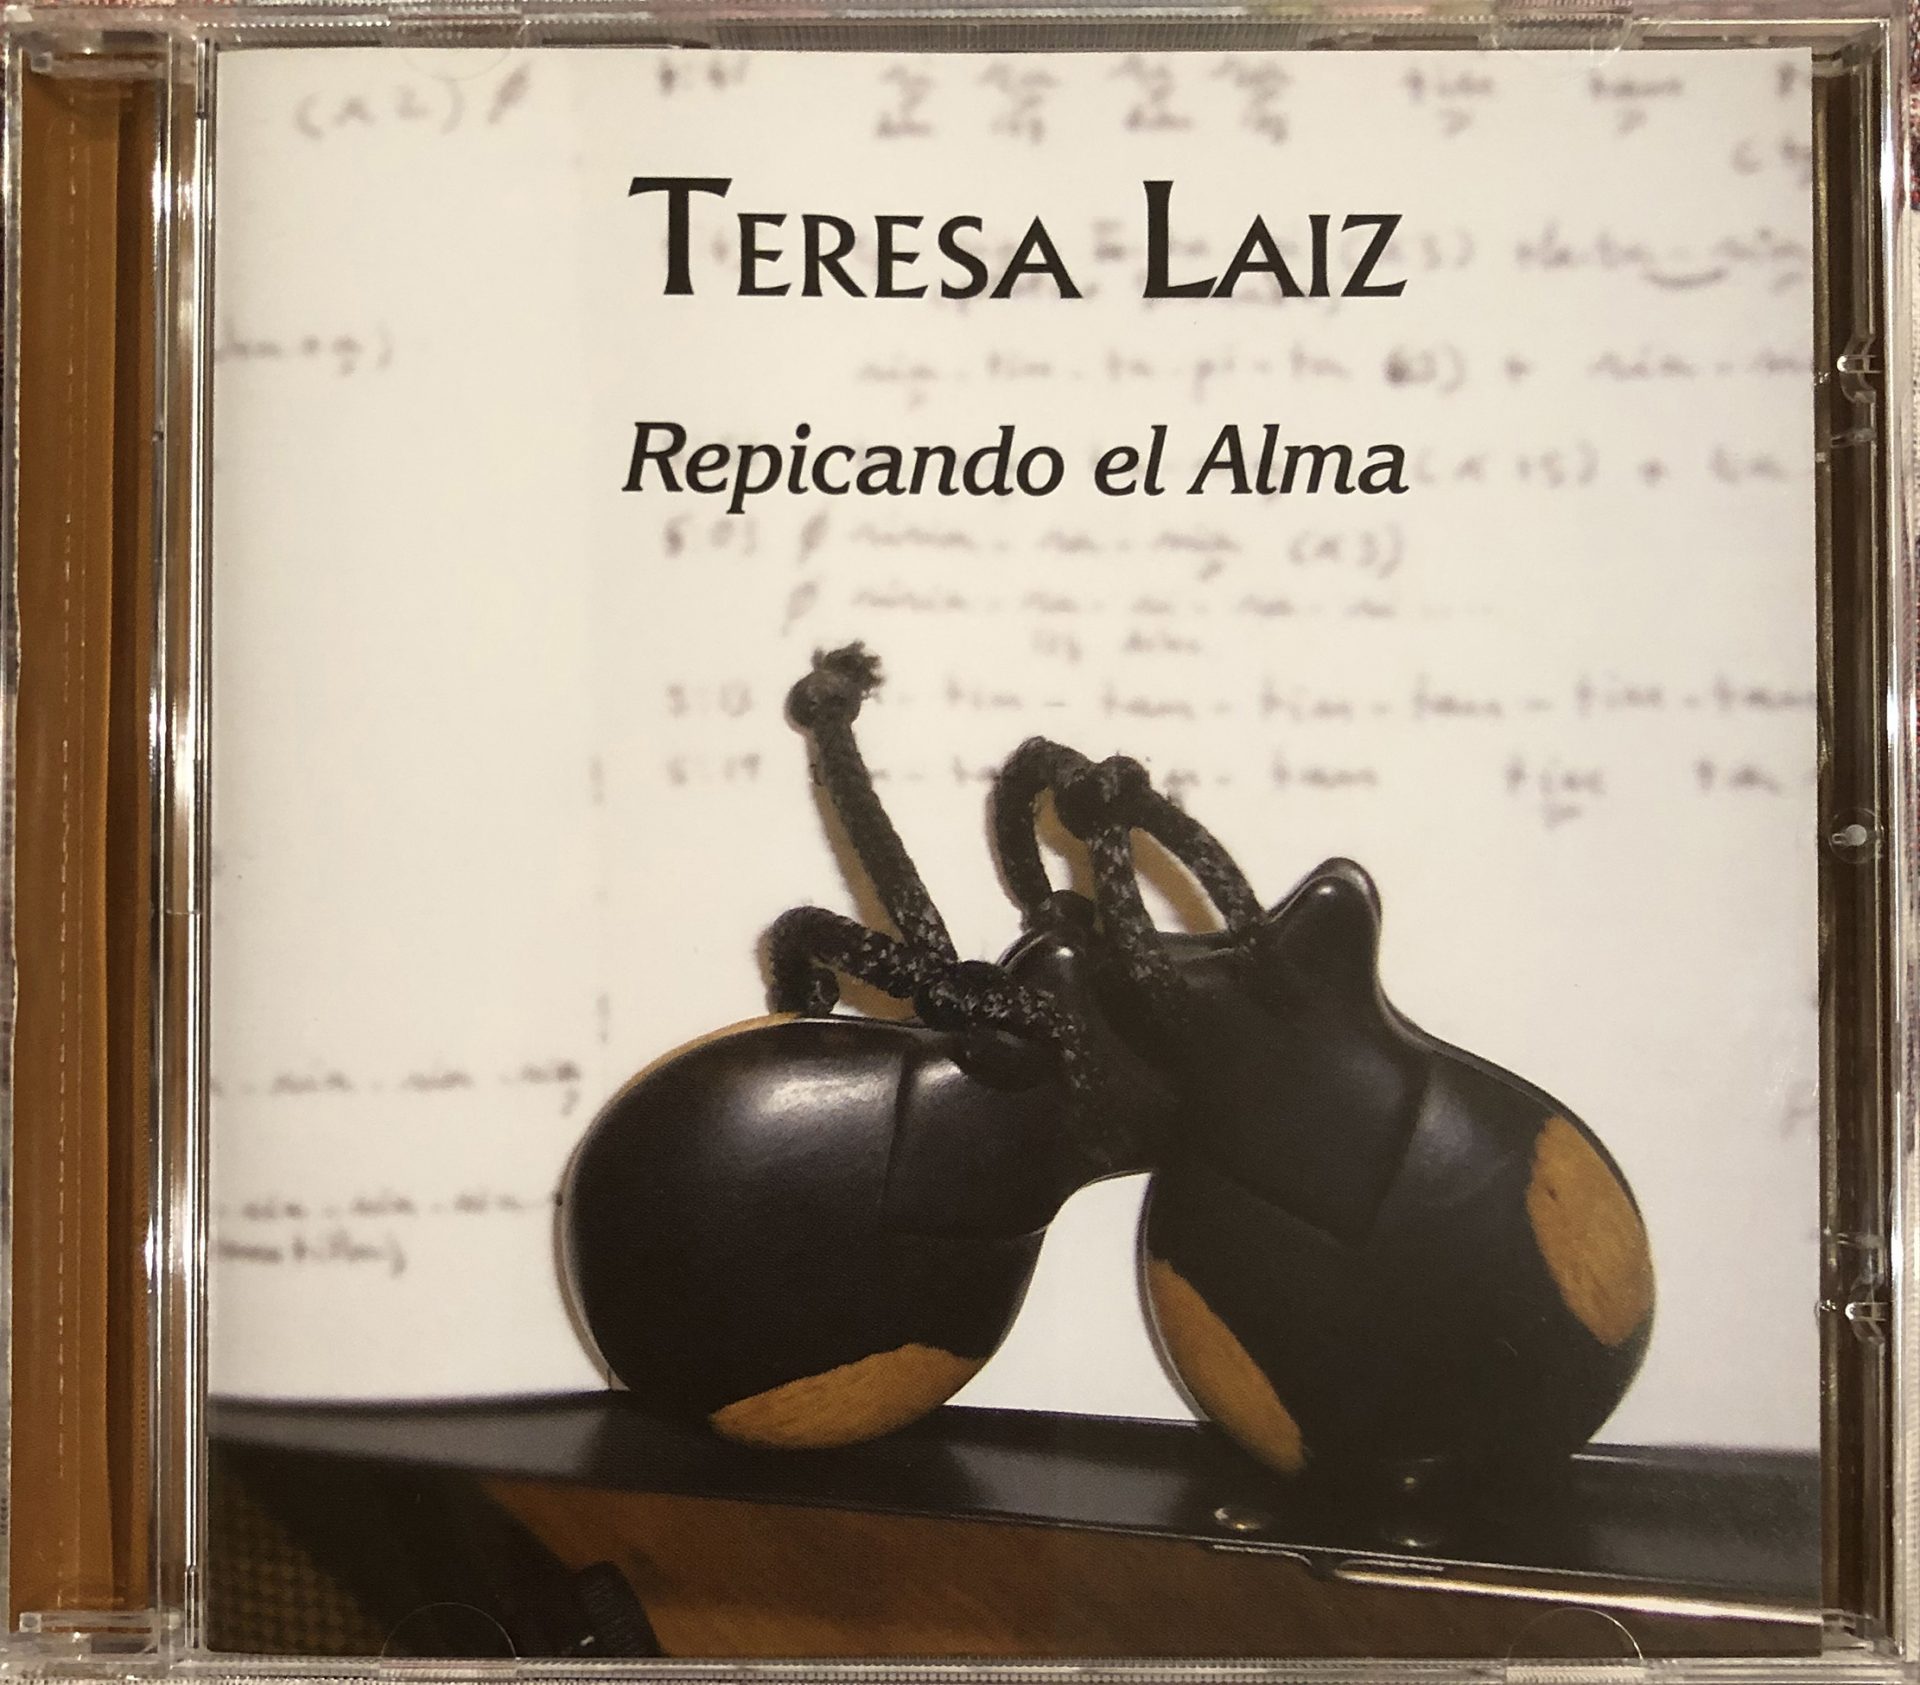 Repicando el Alma - Teresa Laiz - CD